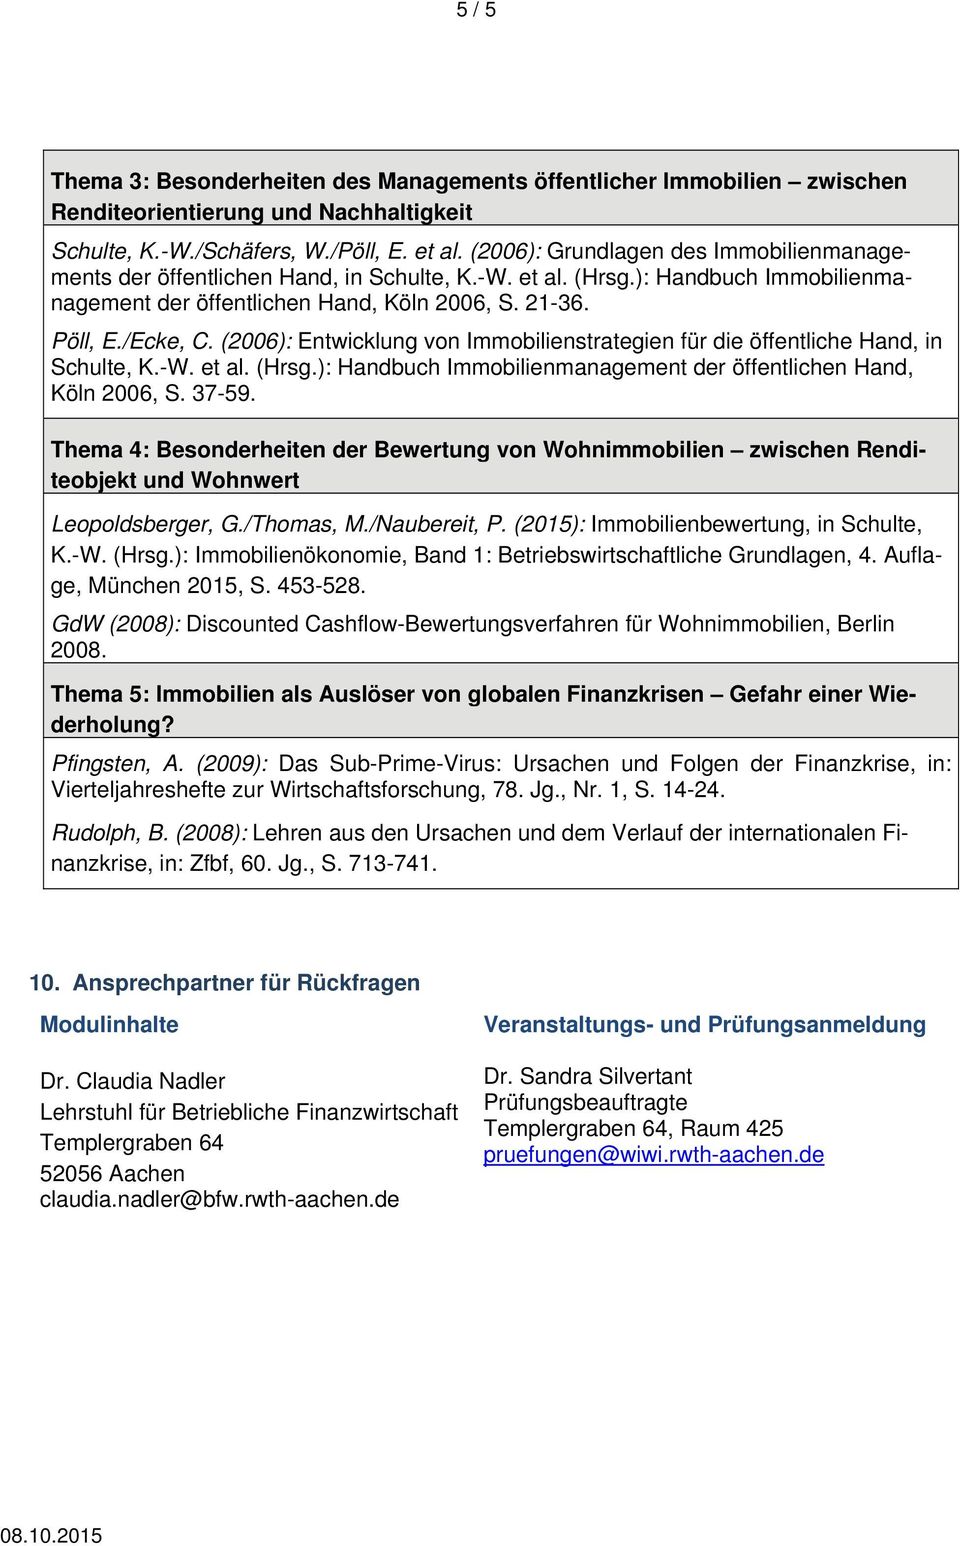 (2006): Entwicklung von Immobilienstrategien für die öffentliche Hand, in Schulte, K.-W. et al. (Hrsg.): Handbuch Immobilienmanagement der öffentlichen Hand, Köln 2006, S. 37-59.